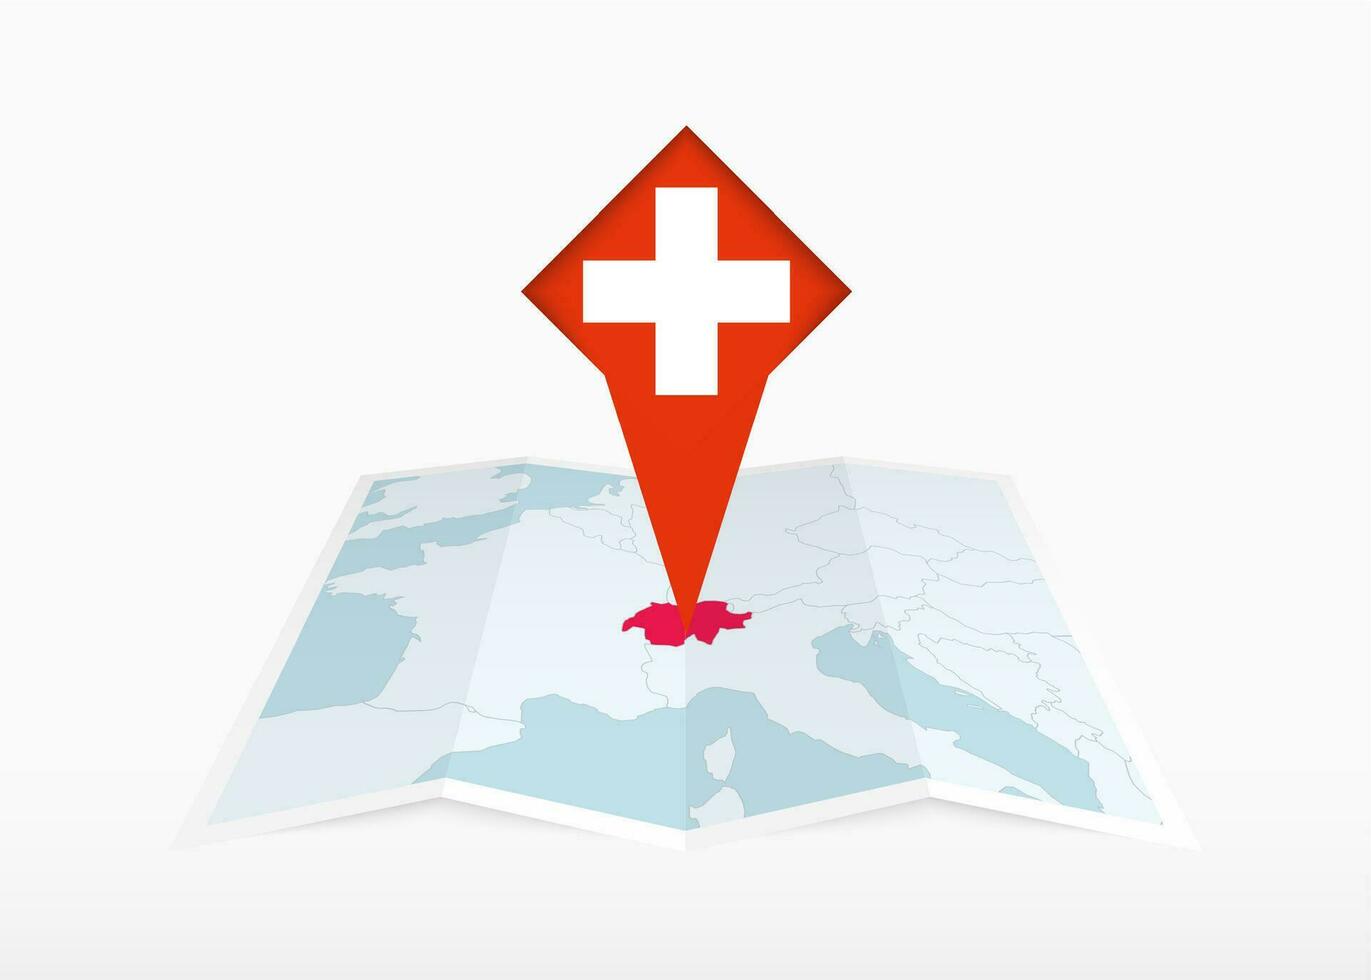 schweiz är avbildad på en vikta papper Karta och fästs plats markör med flagga av schweiz. vektor